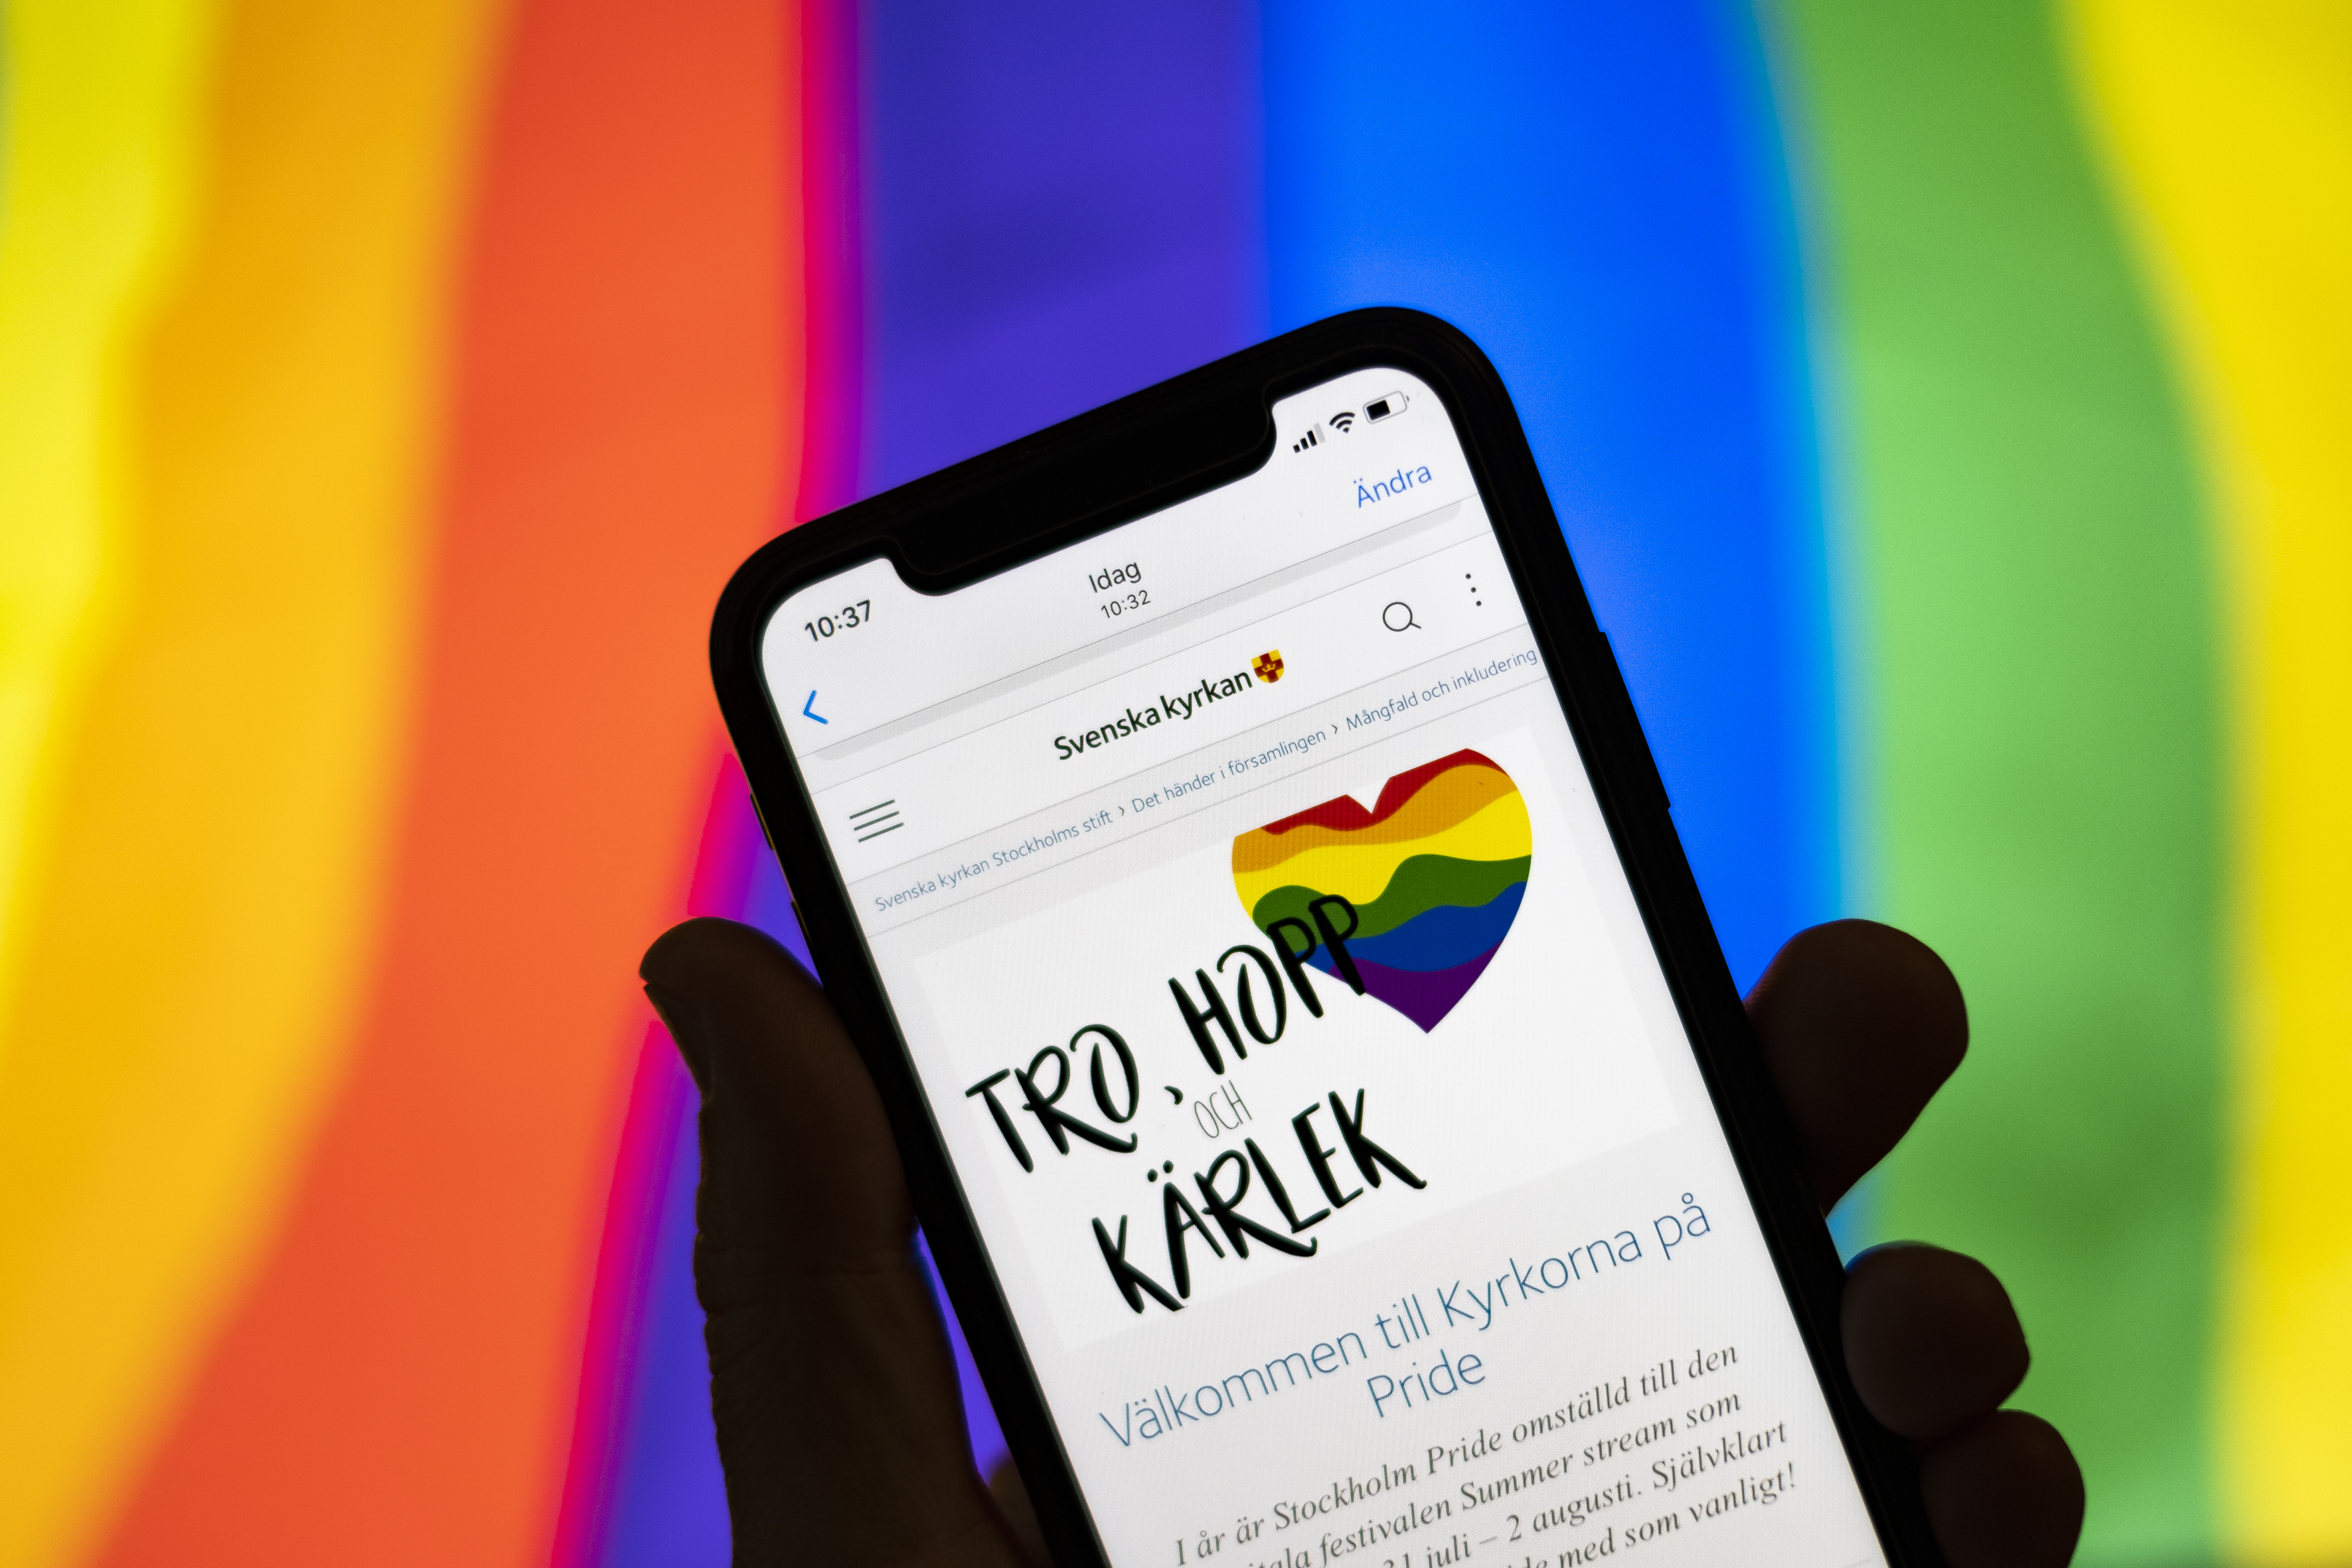 Någon håller en mobiltelefon där skärmen visar Svenska kyrkans information om Pride. I bakgrunden syns regnbågsfärgerna.